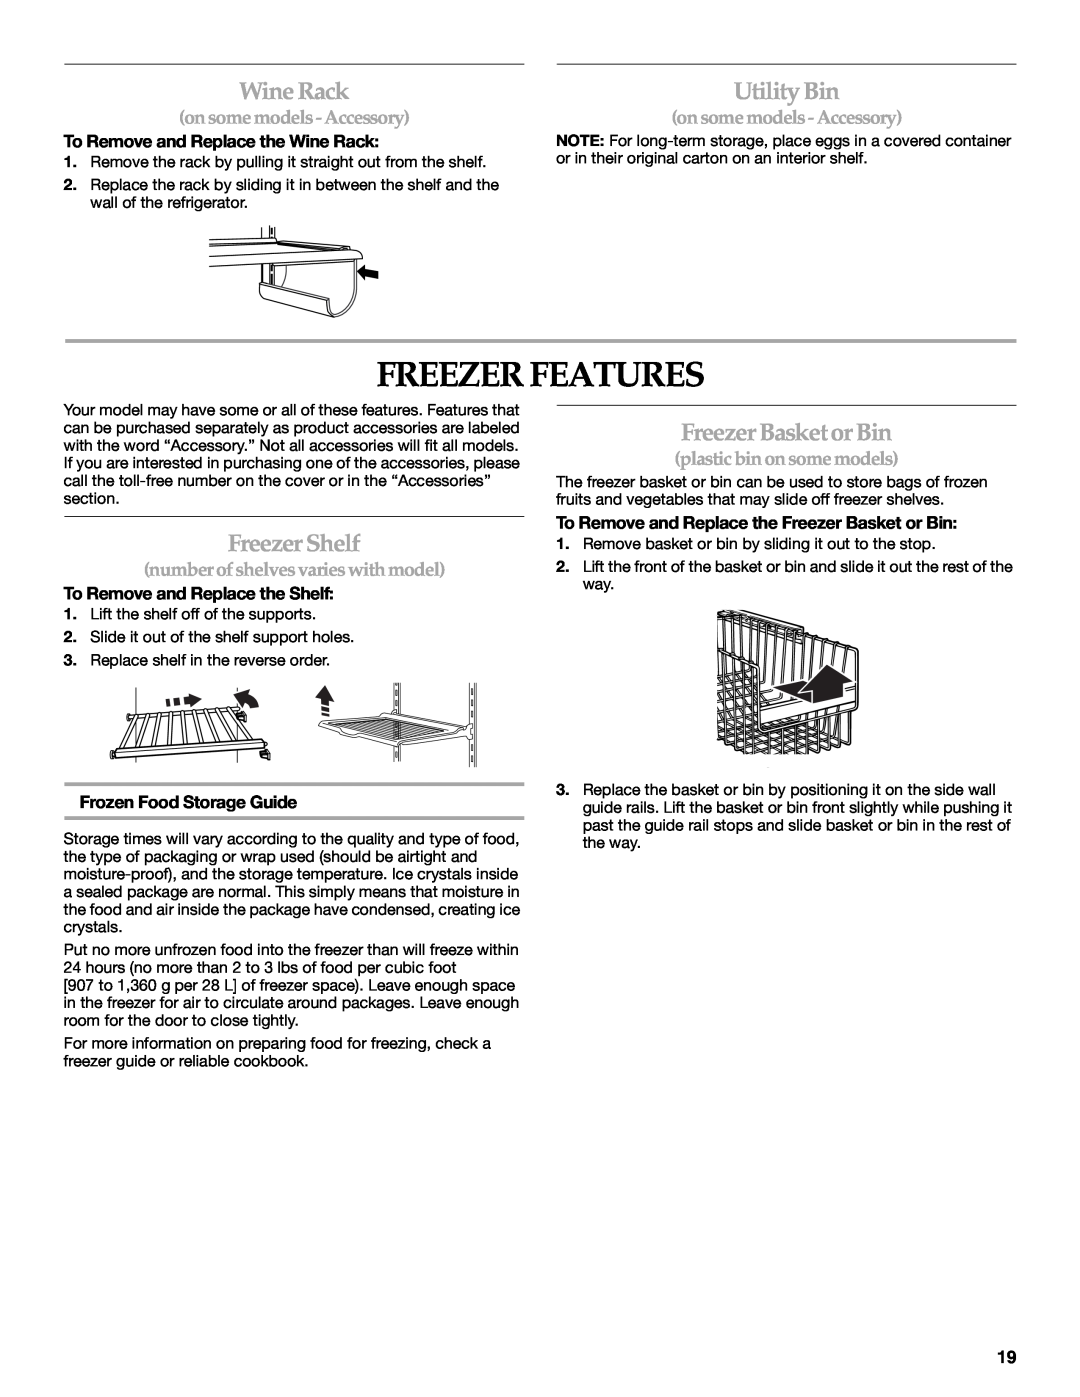 KitchenAid 2318581 manual Freezer Features, Wine Rack, Utility Bin, Freezer Shelf, Freezer Basket or Bin 